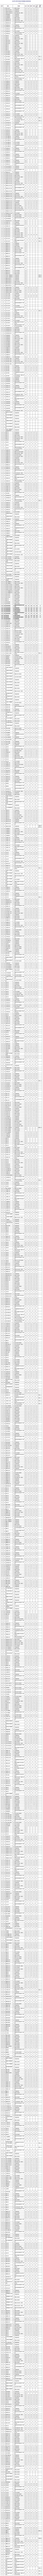 2020年北京高考录取_北京化工大学2020年河南高考录取分数线